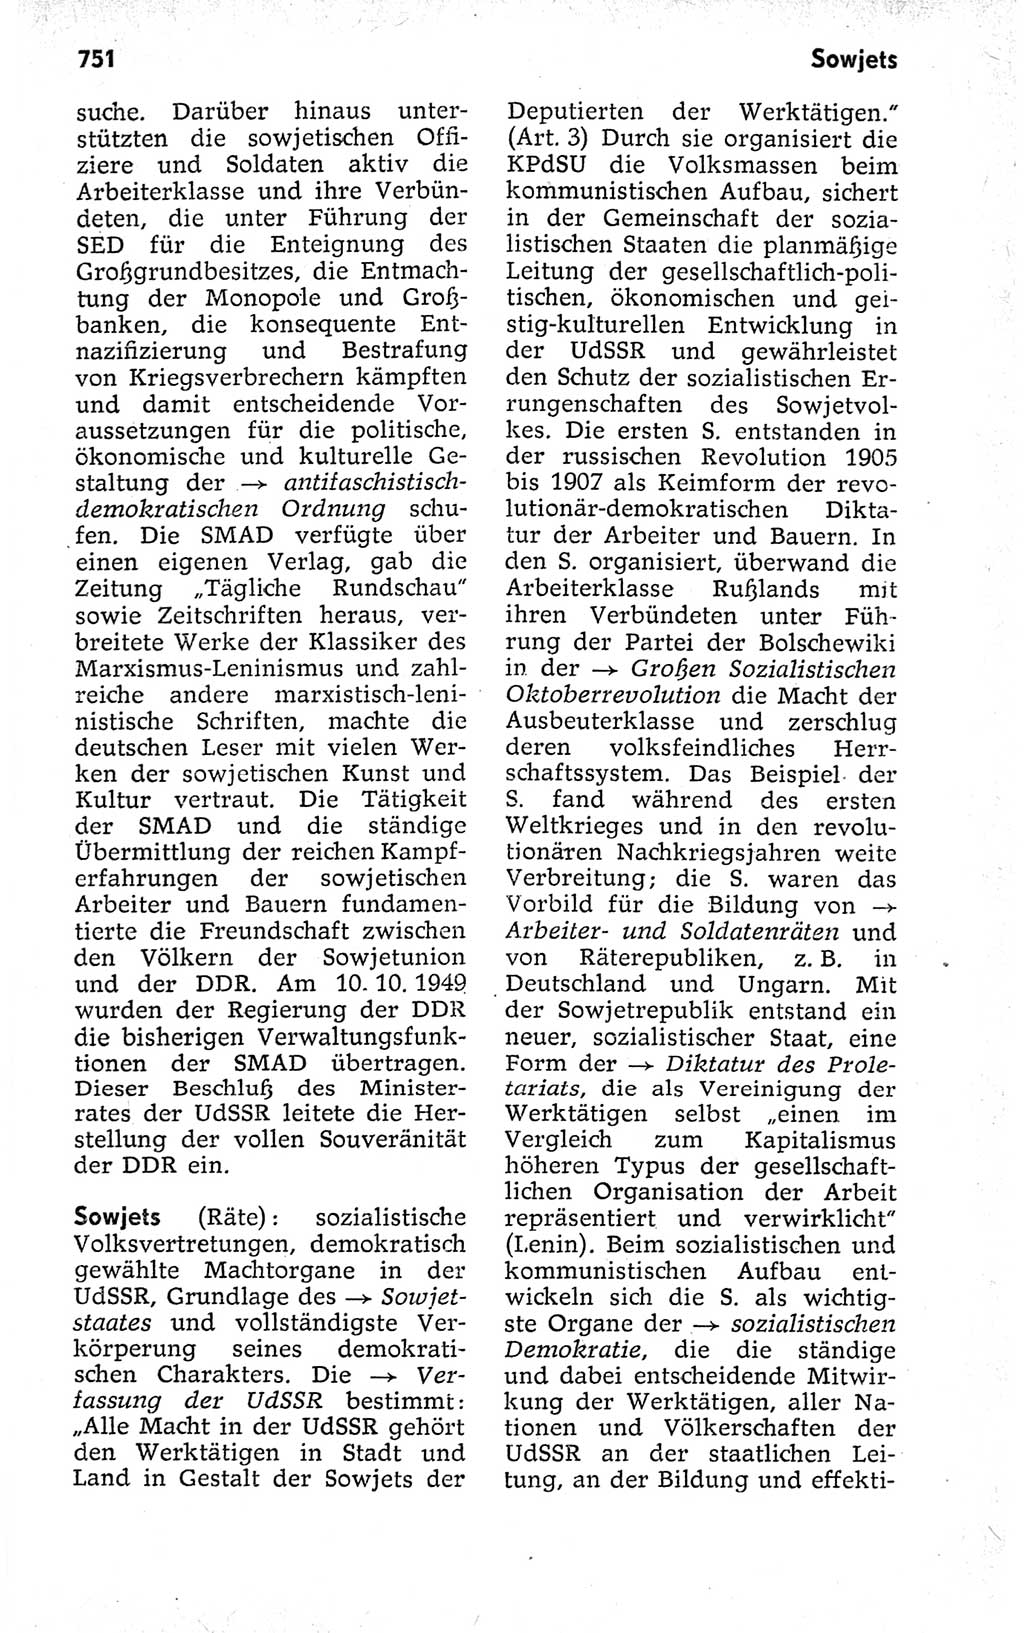 Kleines politisches Wörterbuch [Deutsche Demokratische Republik (DDR)] 1973, Seite 751 (Kl. pol. Wb. DDR 1973, S. 751)